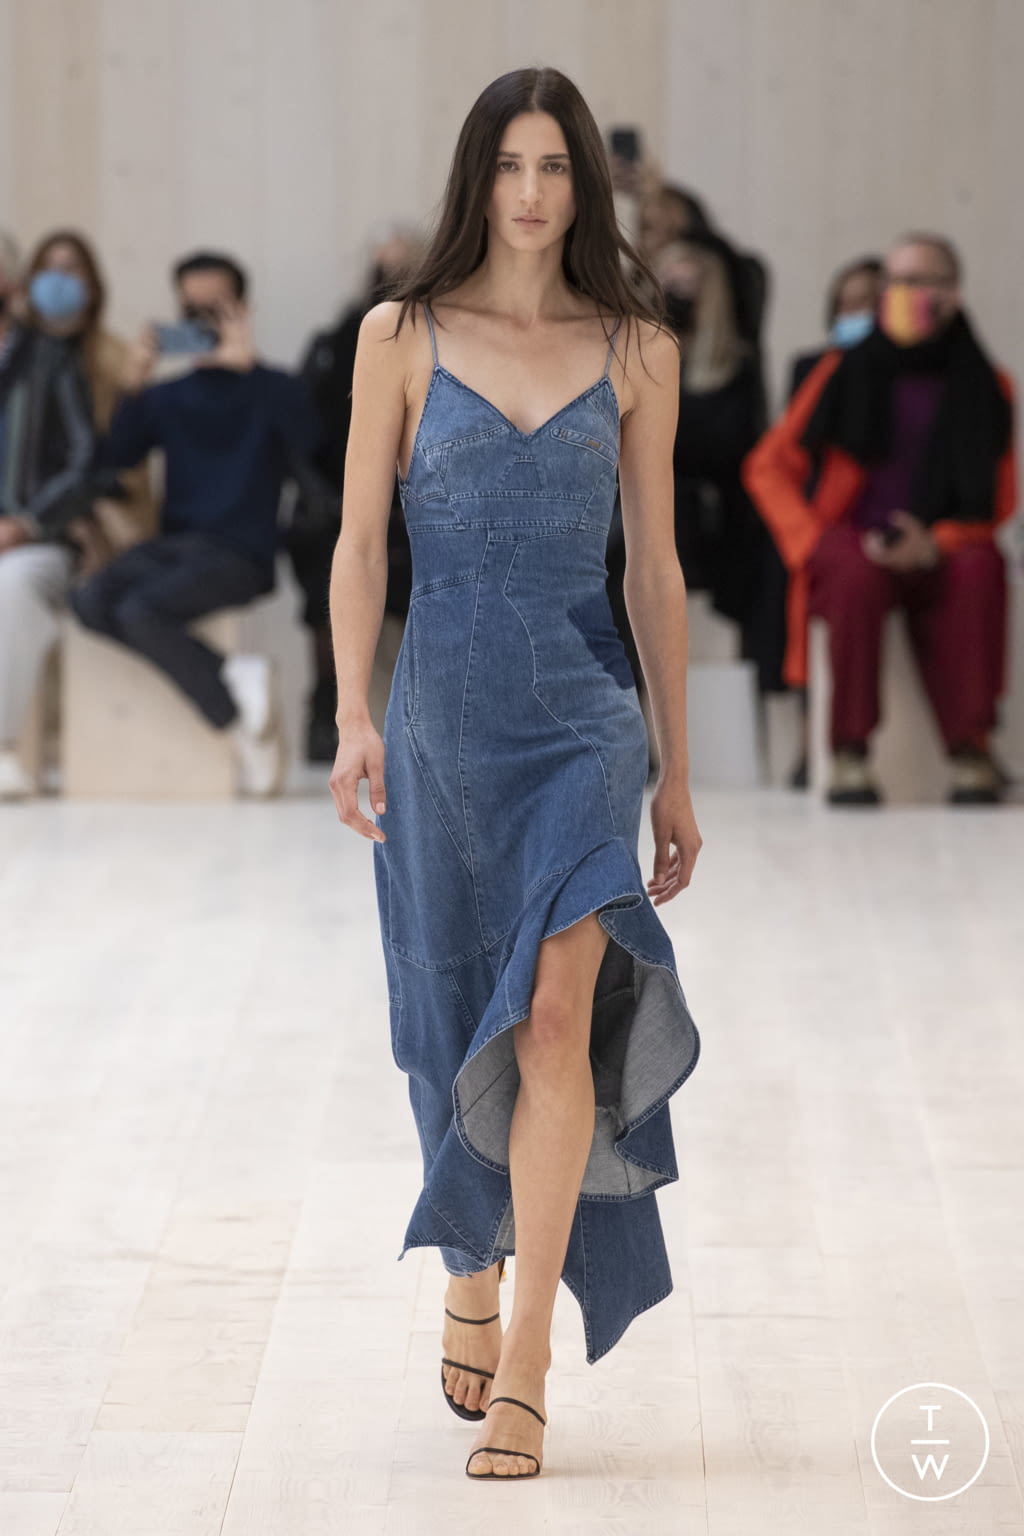 Louis Vuitton SS22 menswear #37 - Tagwalk: The Fashion Search Engine